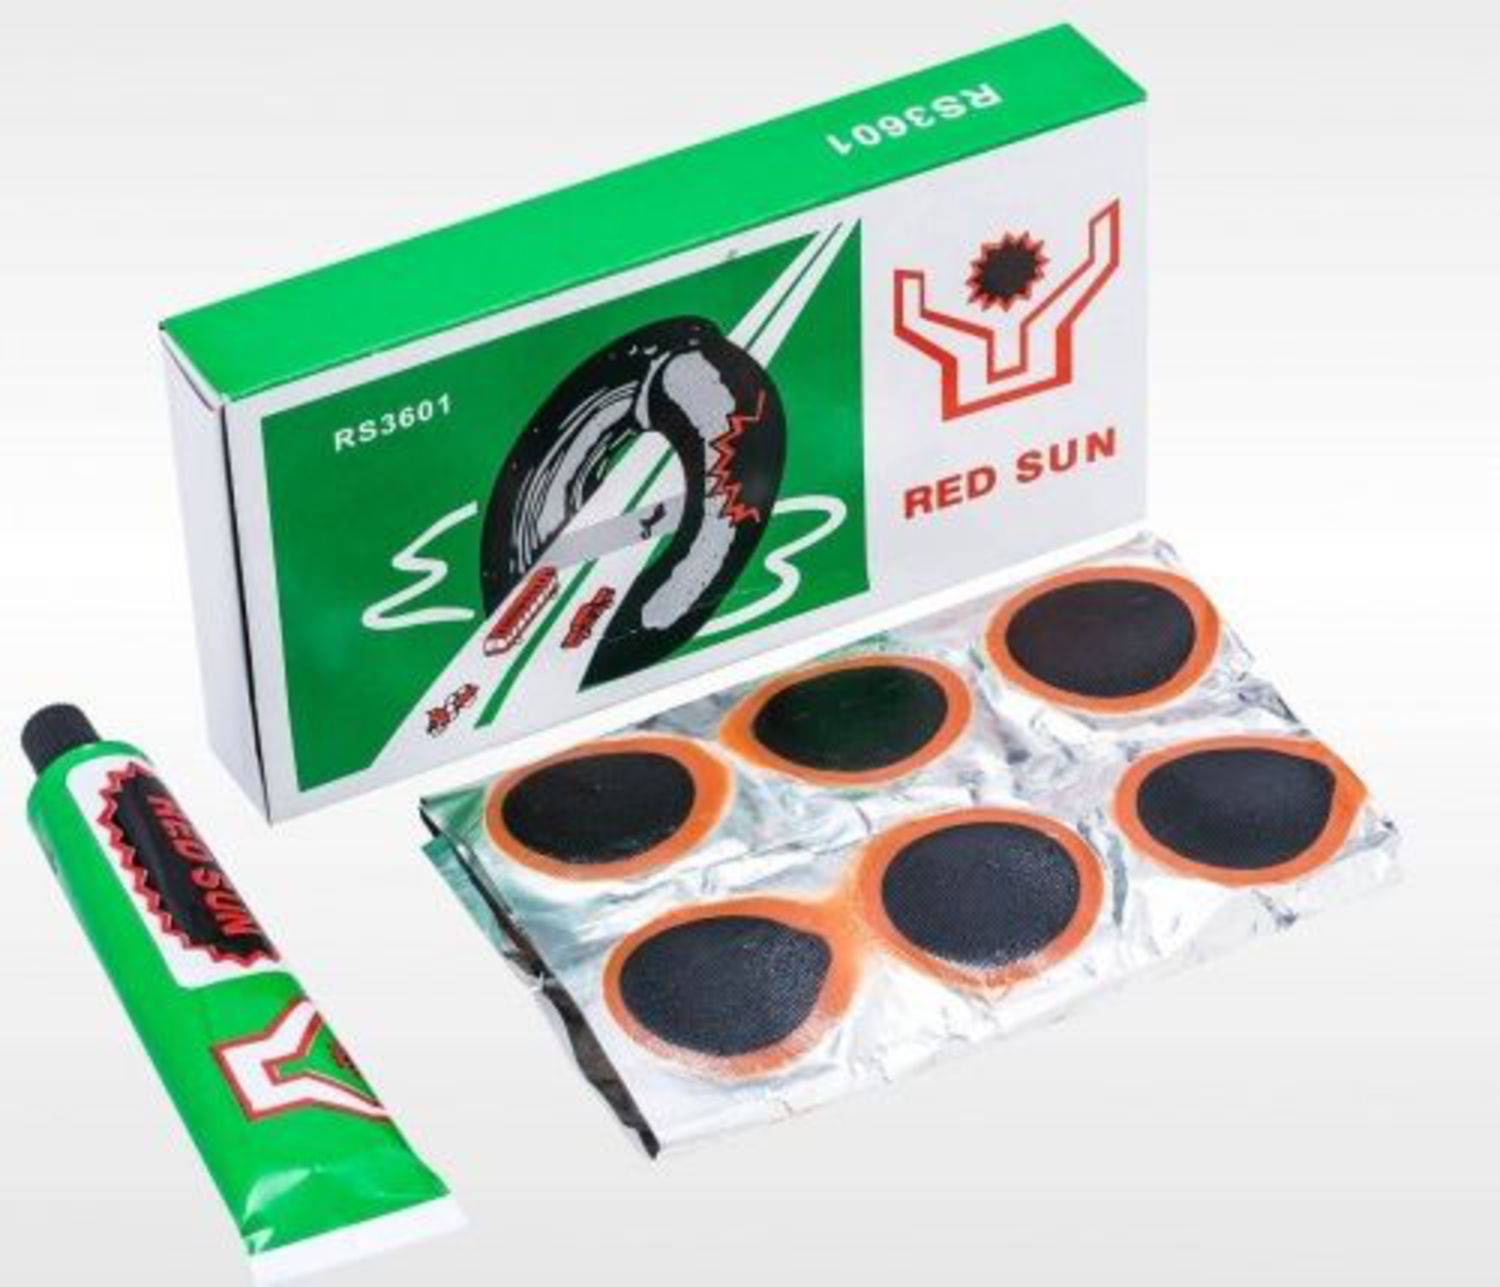 Клеевые заплатки. Велоаптечка Red Sun rs3601. Red Sun латки rs3601 тюбик. Набор для ремонта камеры 36 заплаток rs3601. Латки для камер велосипеда Red Sun rs3601.